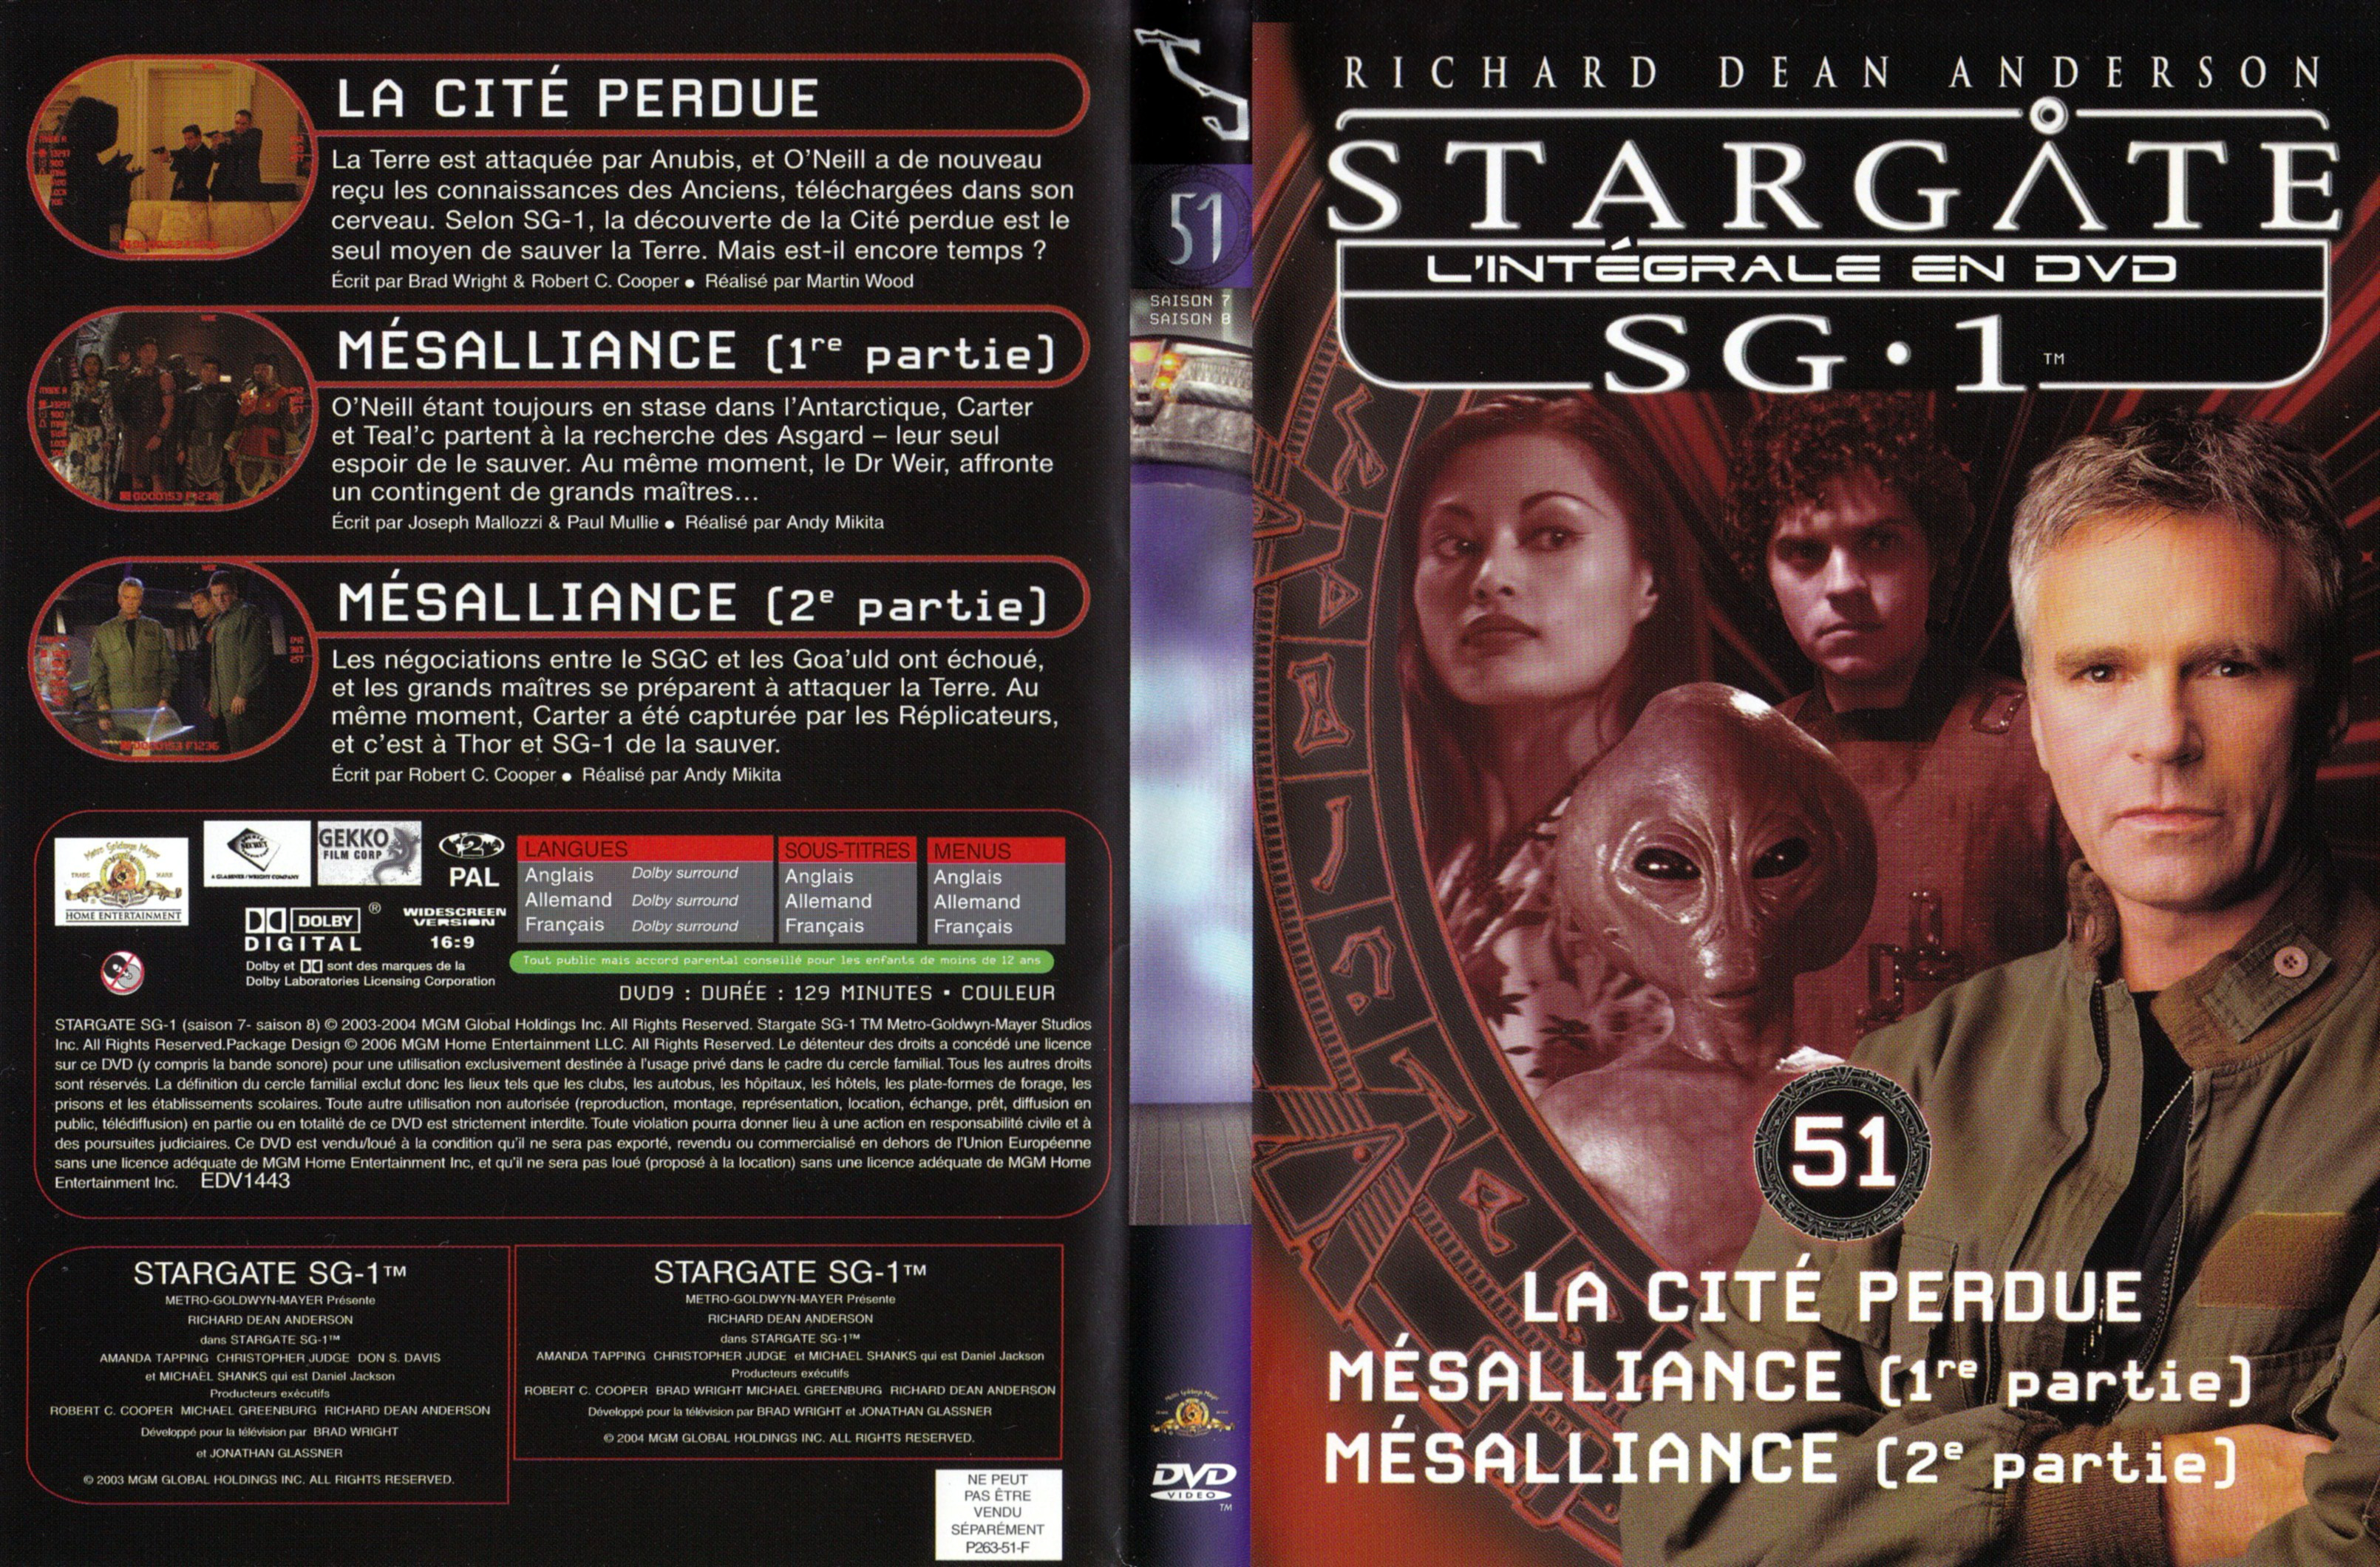 Jaquette DVD Stargate SG1 Intgrale Saison 7-8 vol 51